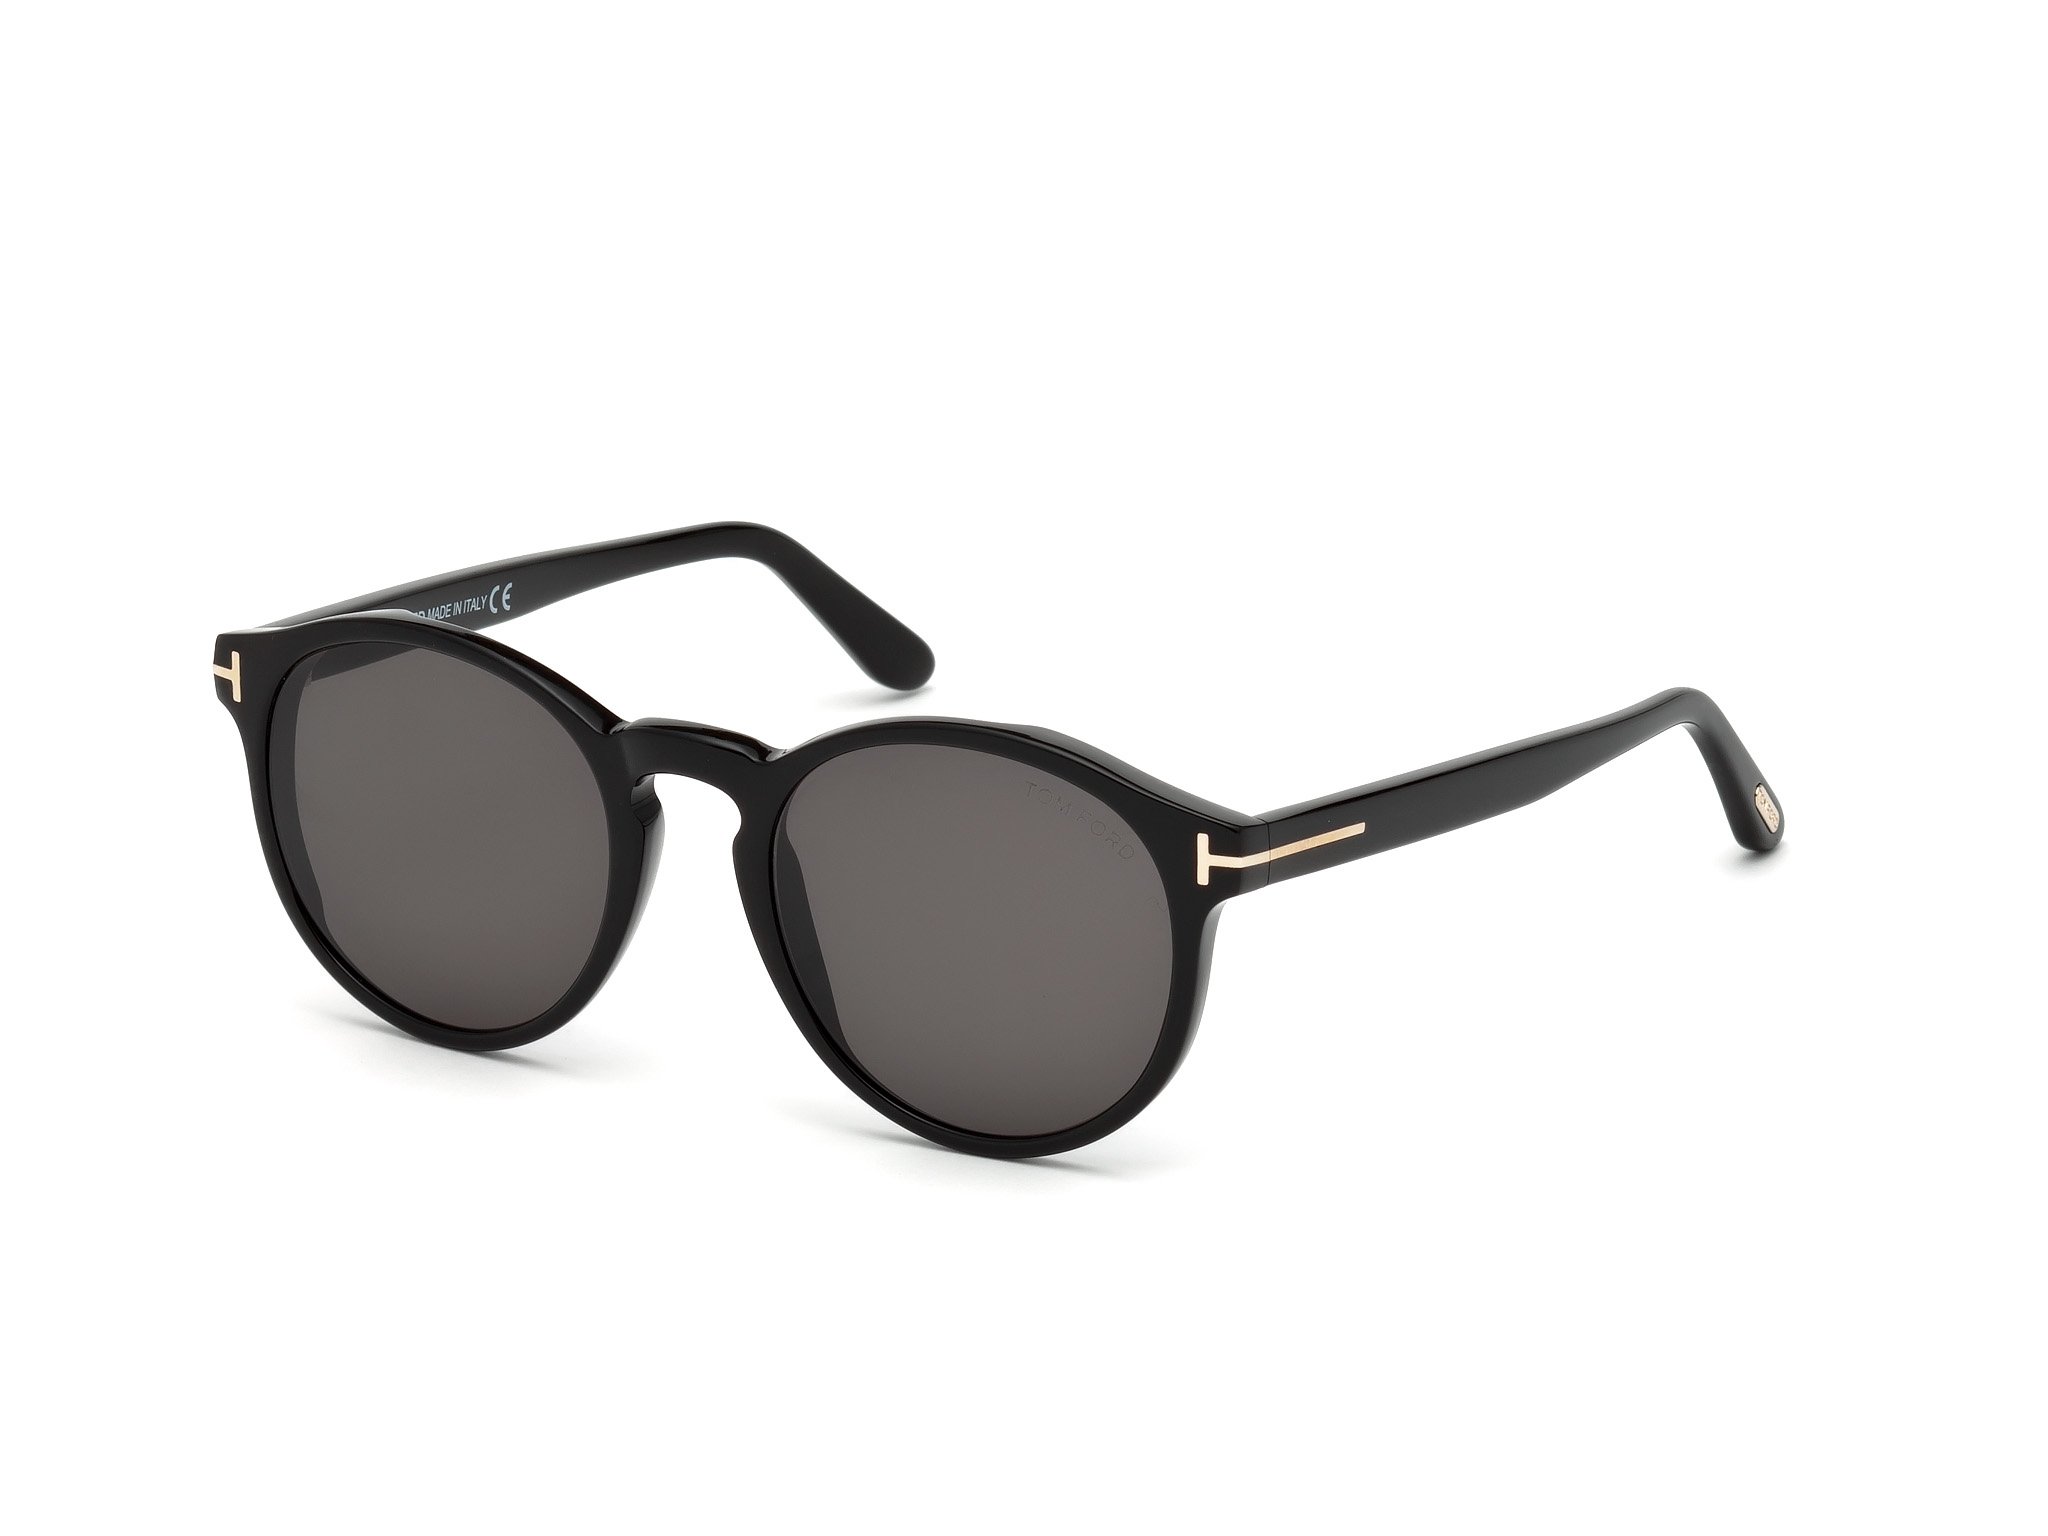 Das Bild zeigt die Sonnenbrille IAN FT0591 von der Marke Tom Ford in schwarz